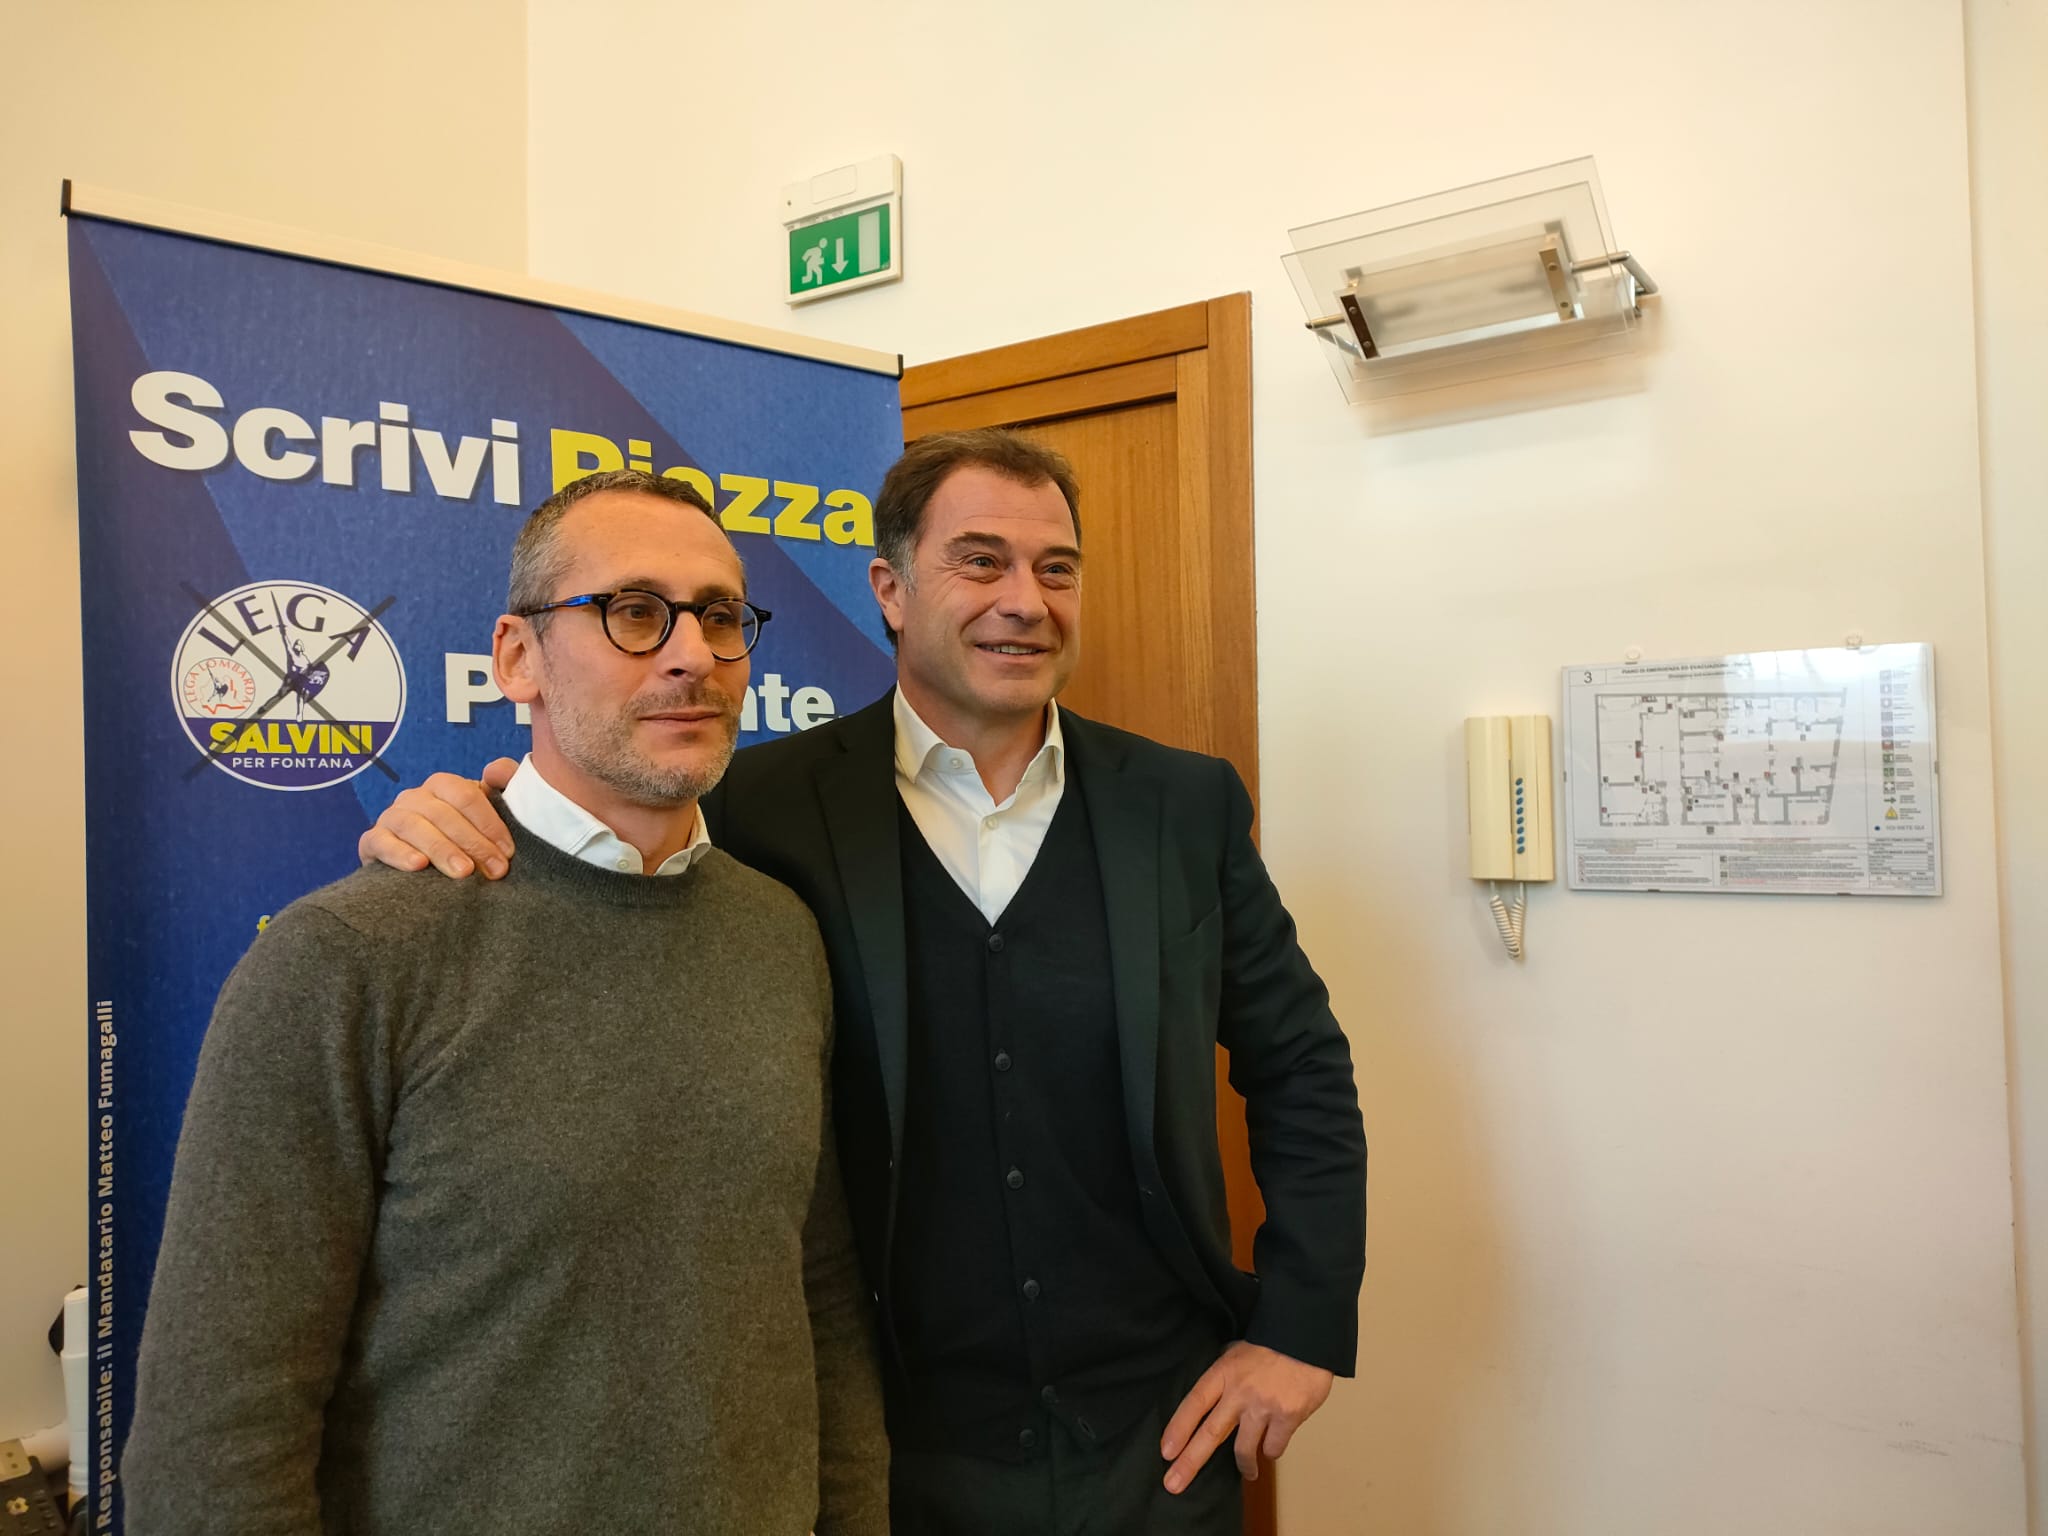 Mauro Piazza, in corsa per le elezioni regionali, incassa il sostegno di Antonio Rossi che non si candida